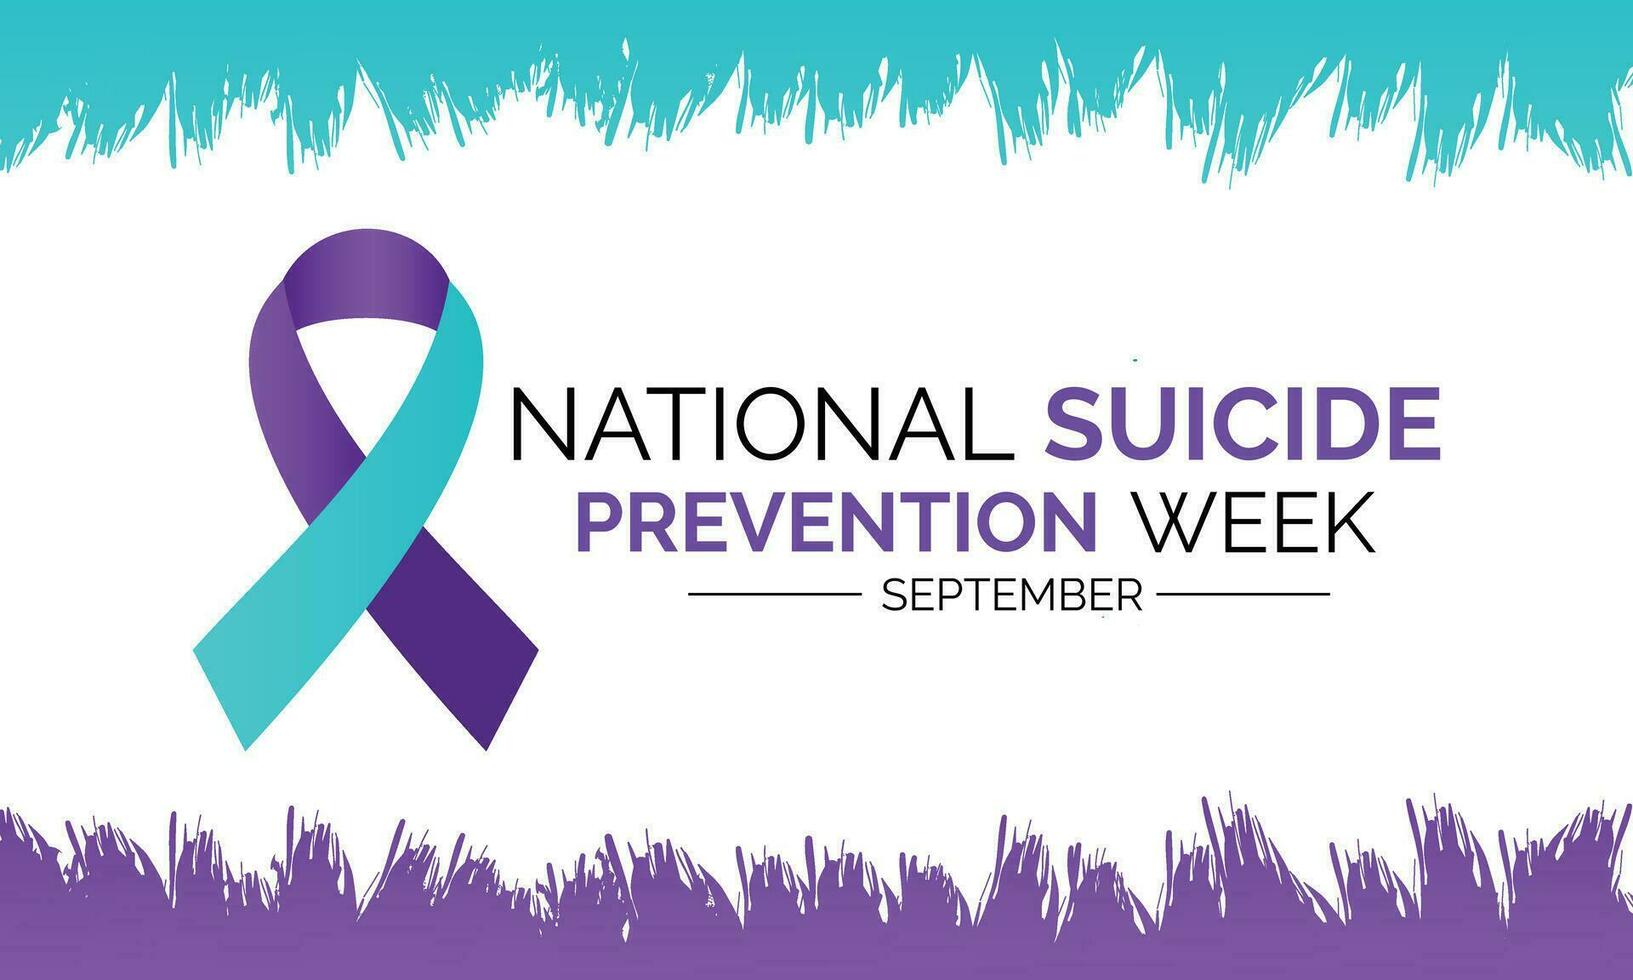 nazionale suicidio prevenzione mese osservato ogni anno durante settembre striscione, vacanza, manifesto, carta e sfondo disegno.vettore illustrazione bianca e blu colore sfondo. vettore